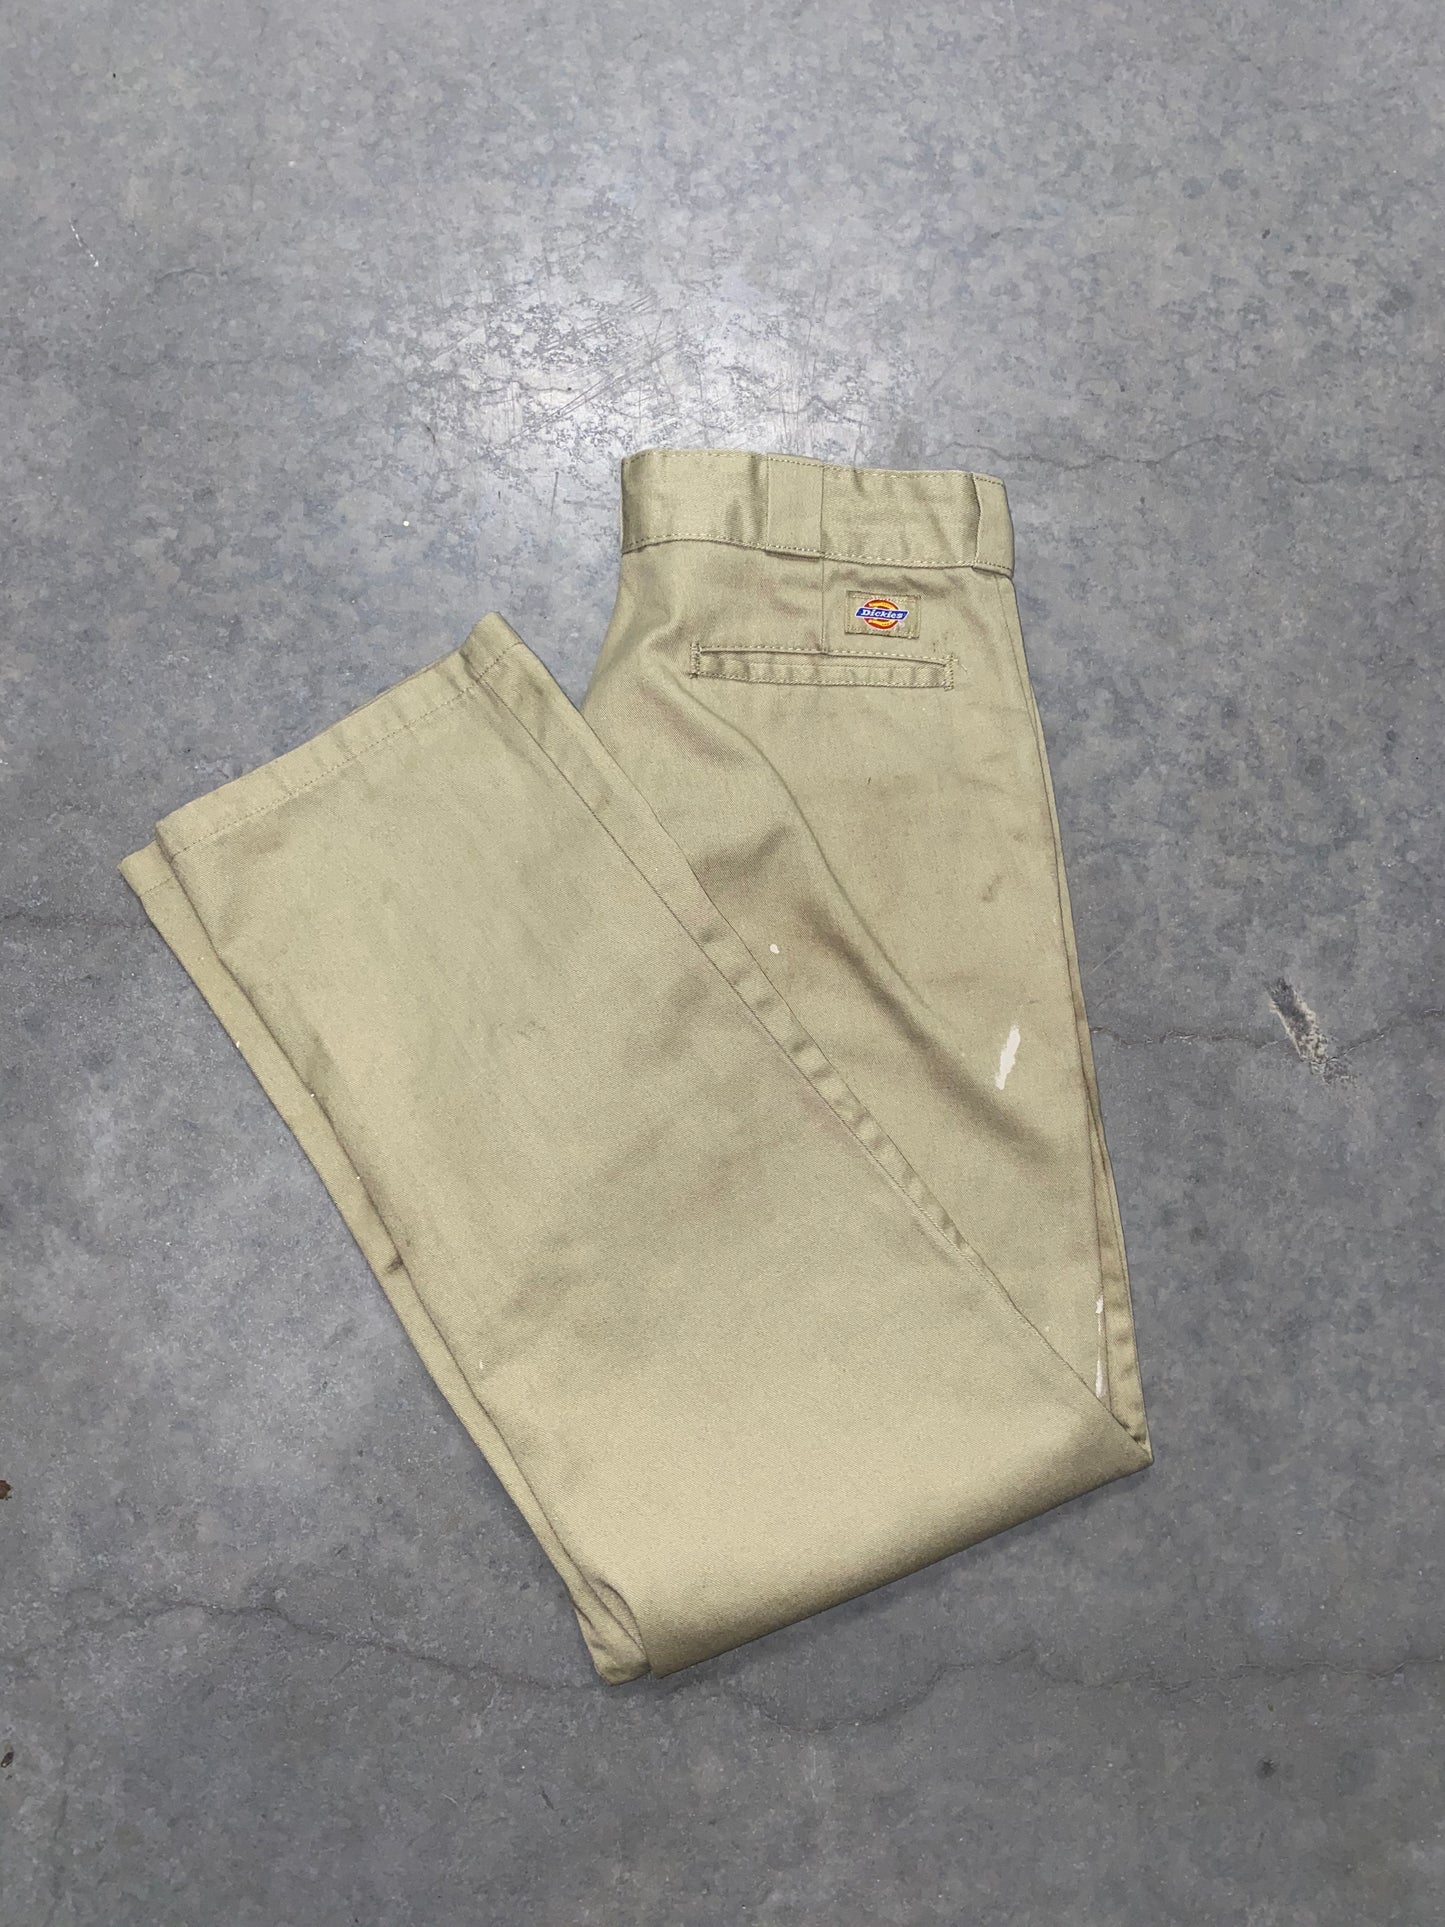 Vintage Dickies 874 Work Pants